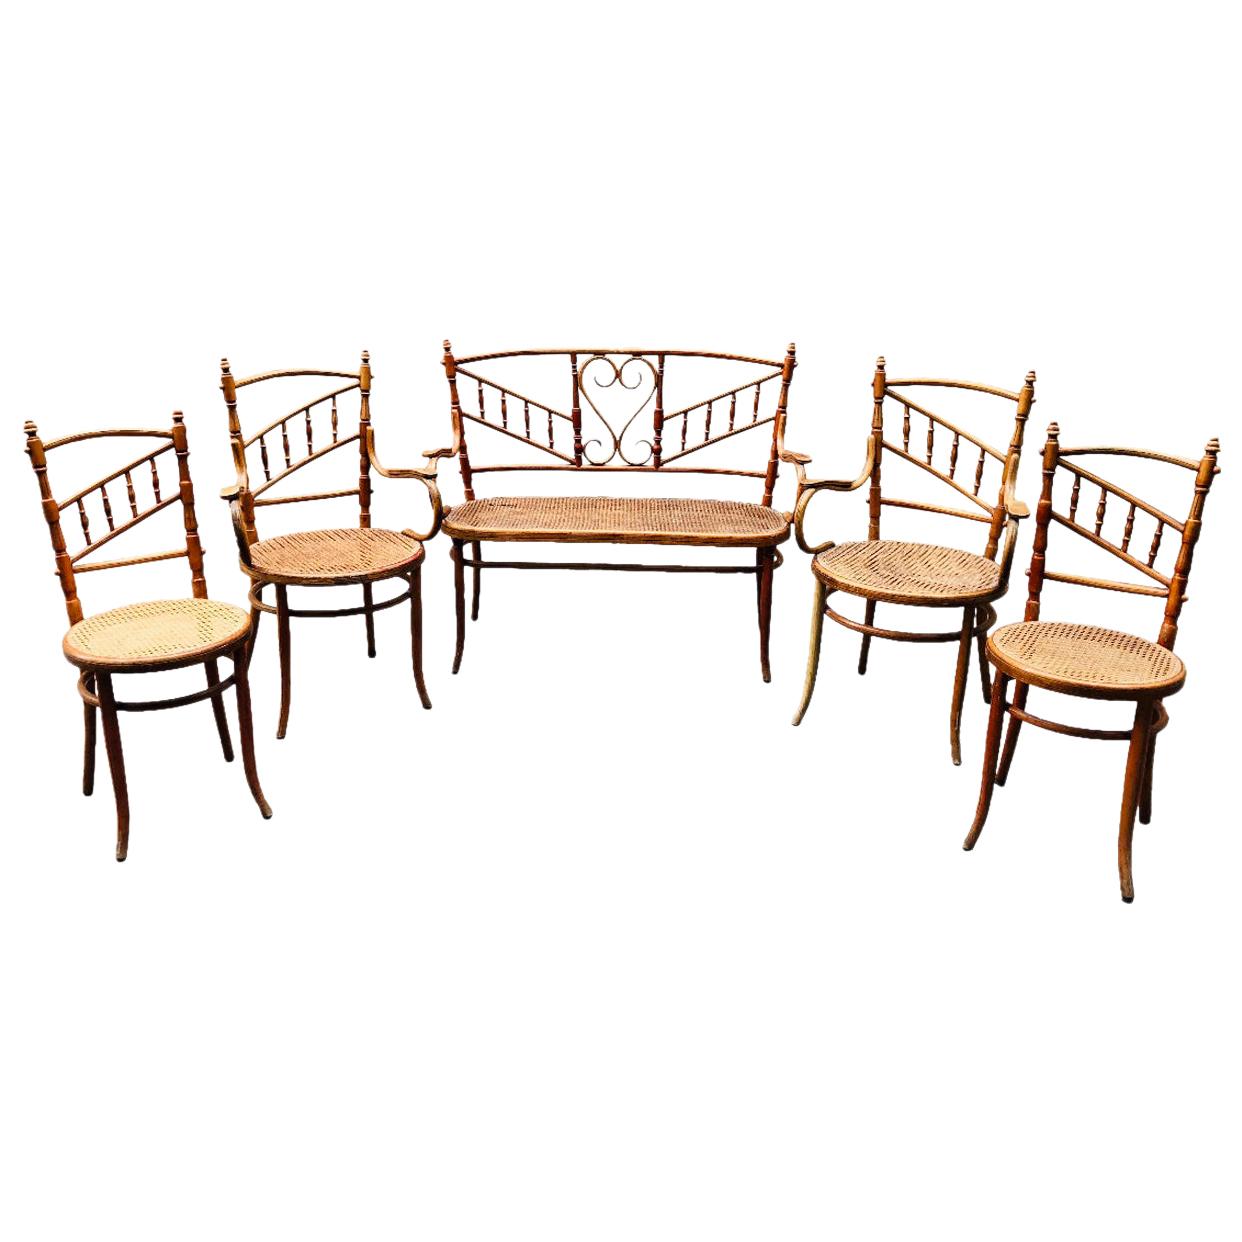 Ensemble de banc asymétrique Fischel du 20ème siècle, deux fauteuils et deux chaises